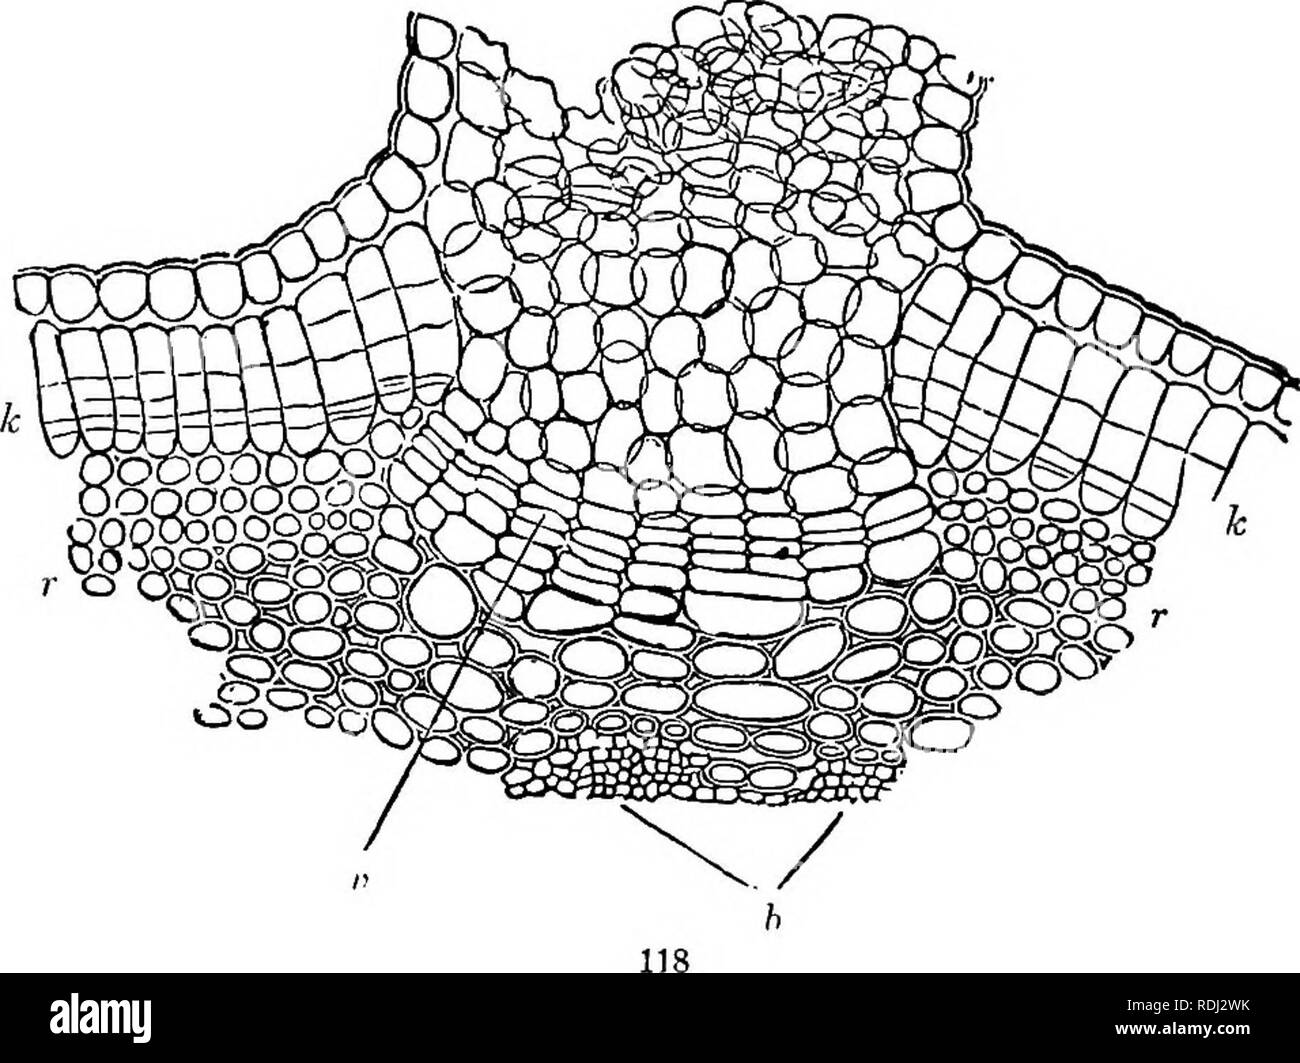 lenticel diagram